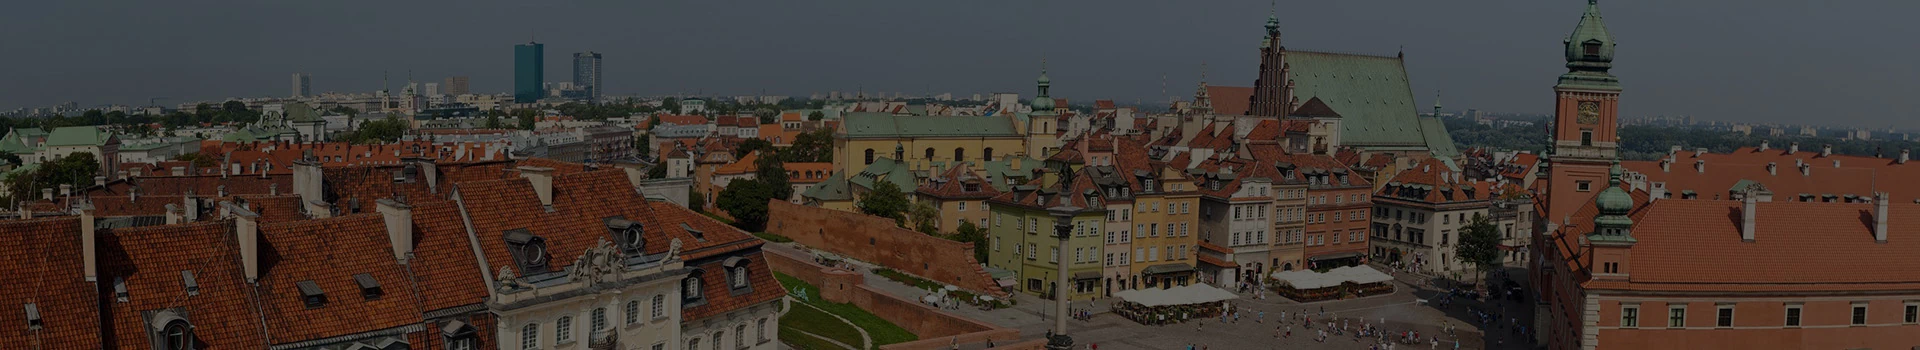 widok na panoramę Warszawy, kolumna Zygmunta, Zamek Królewski